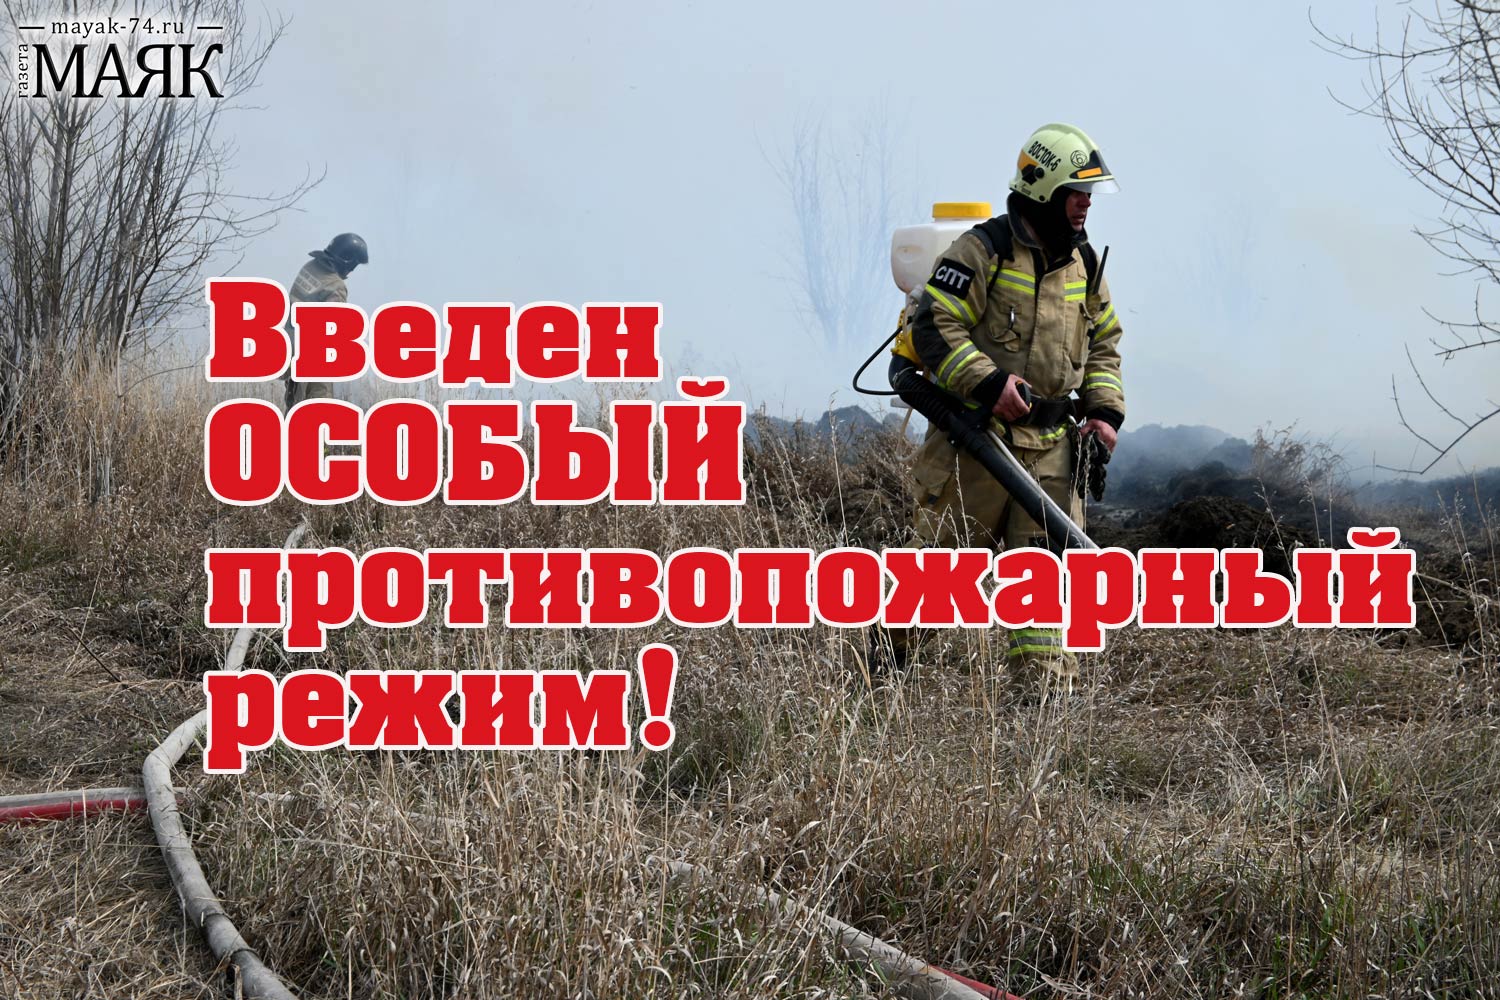 Особый противопожарный режим установили в Красноармейском районе